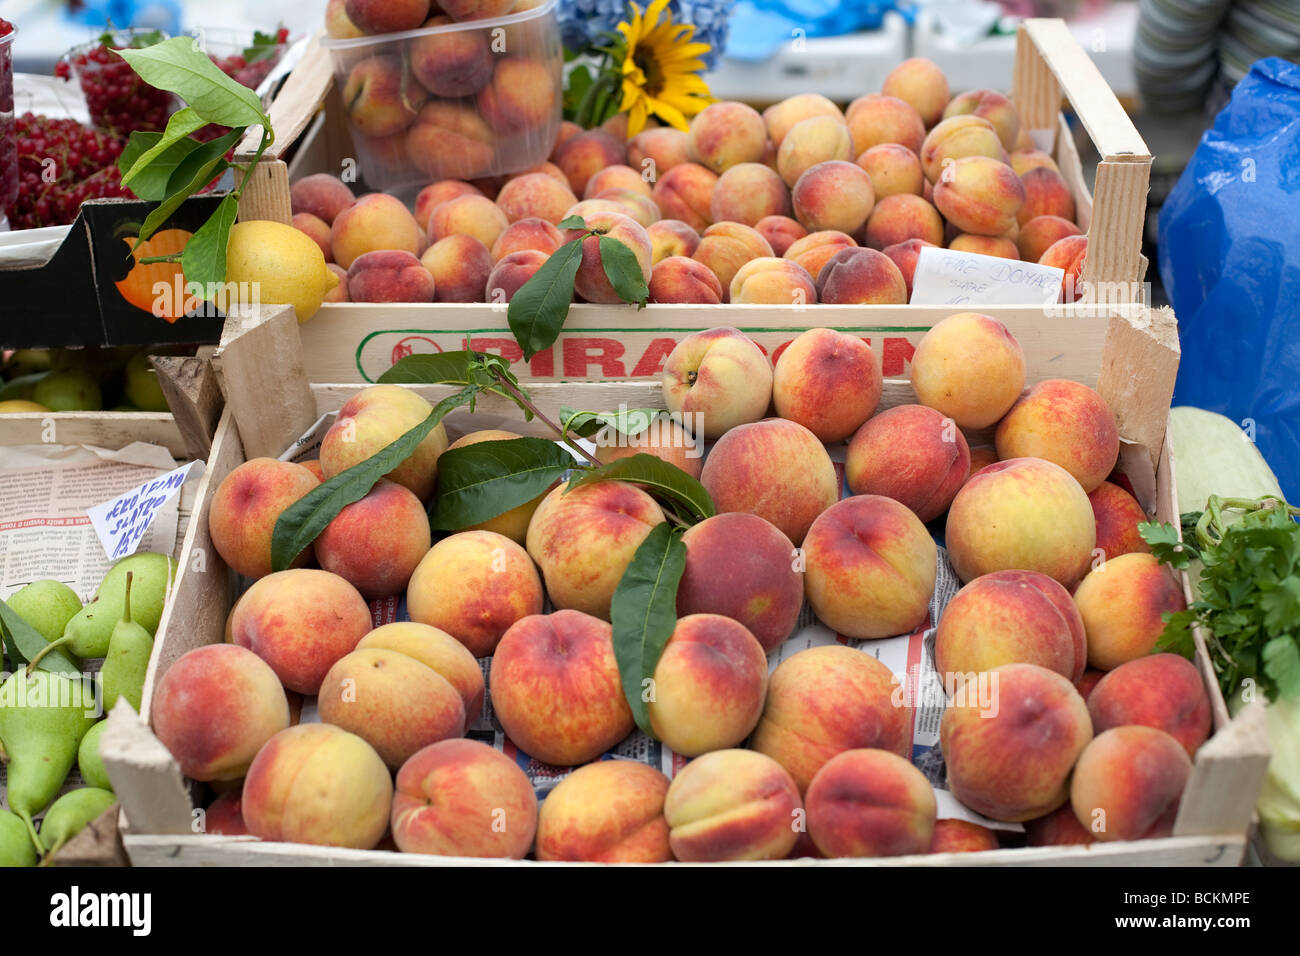 Les fruits cultivés naturellement vendus sur le marché les pêches dans une caisse en bois Banque D'Images